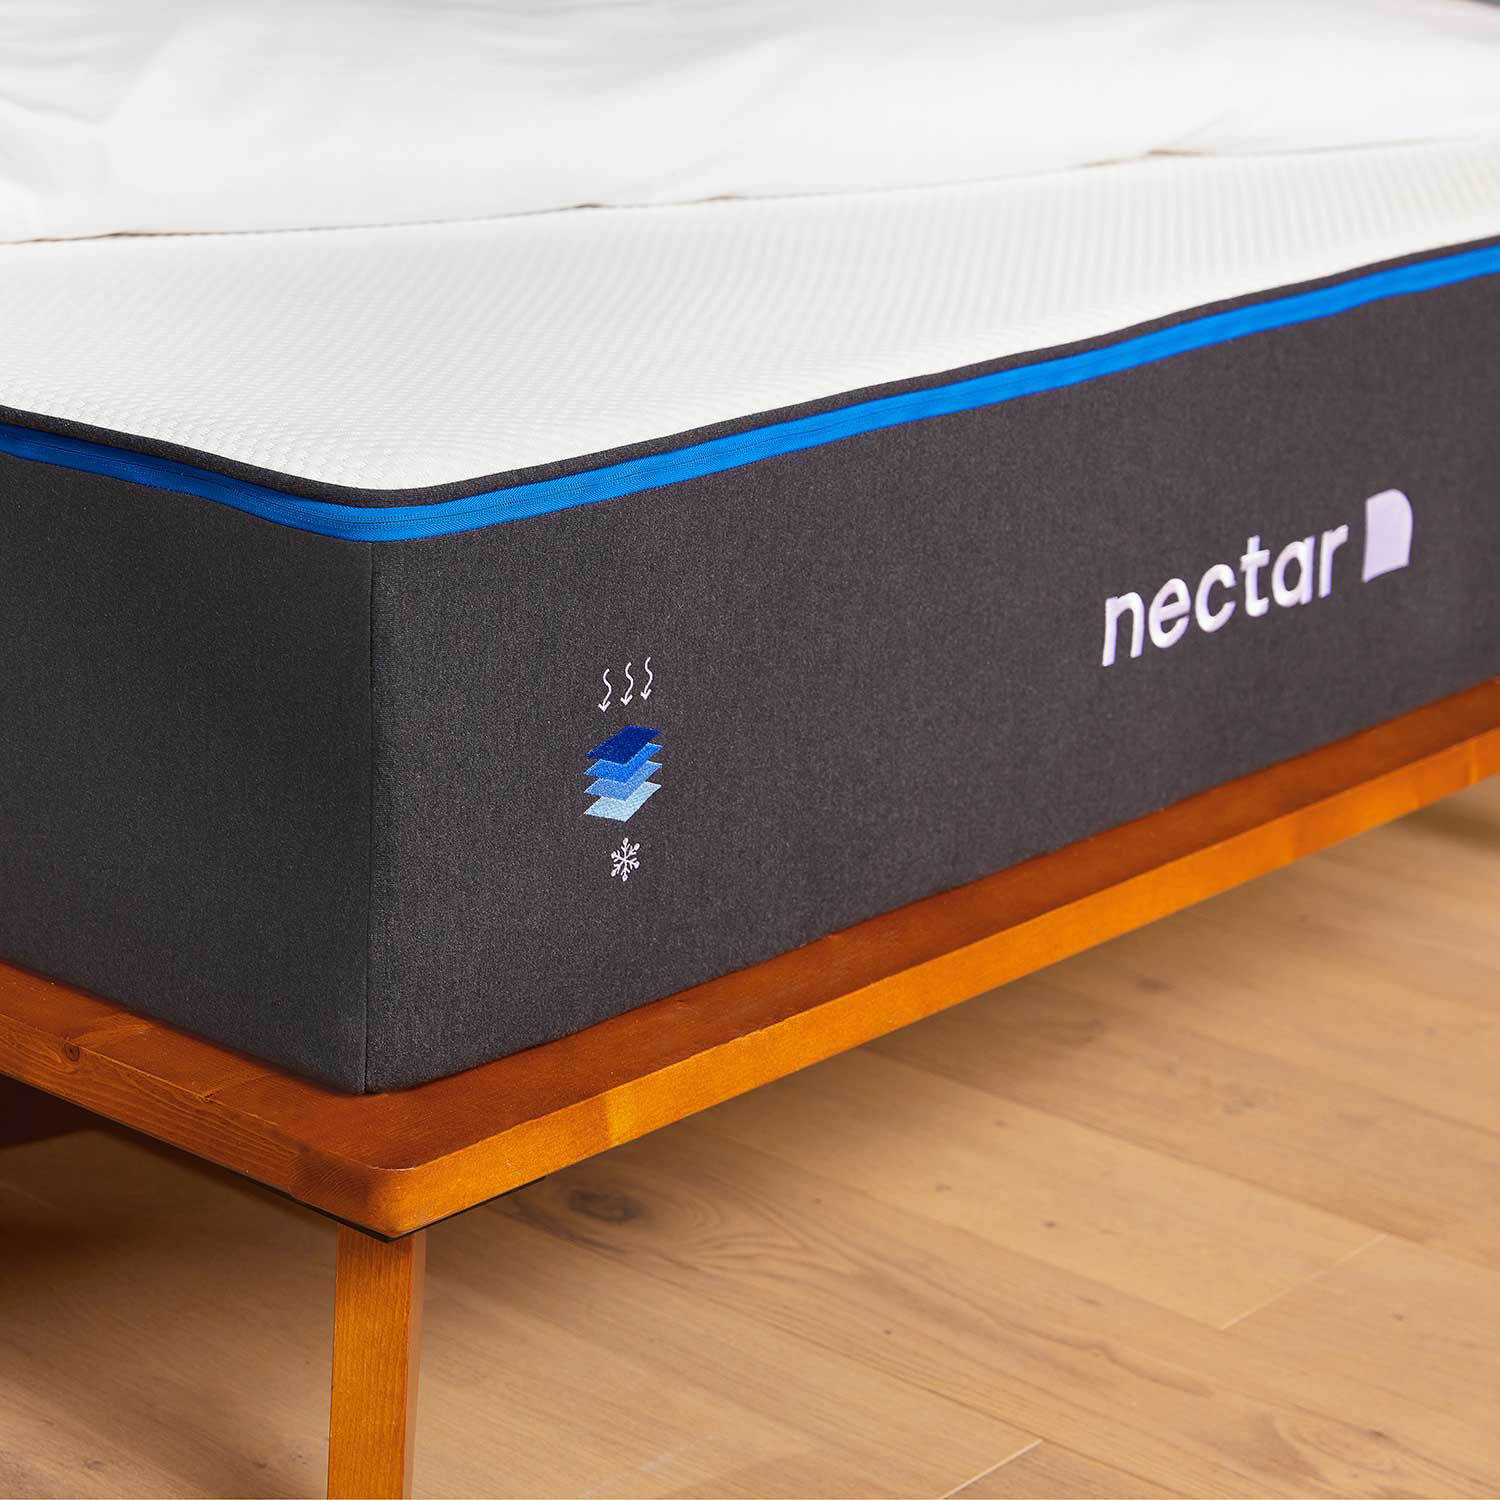 nectar mattress review long term